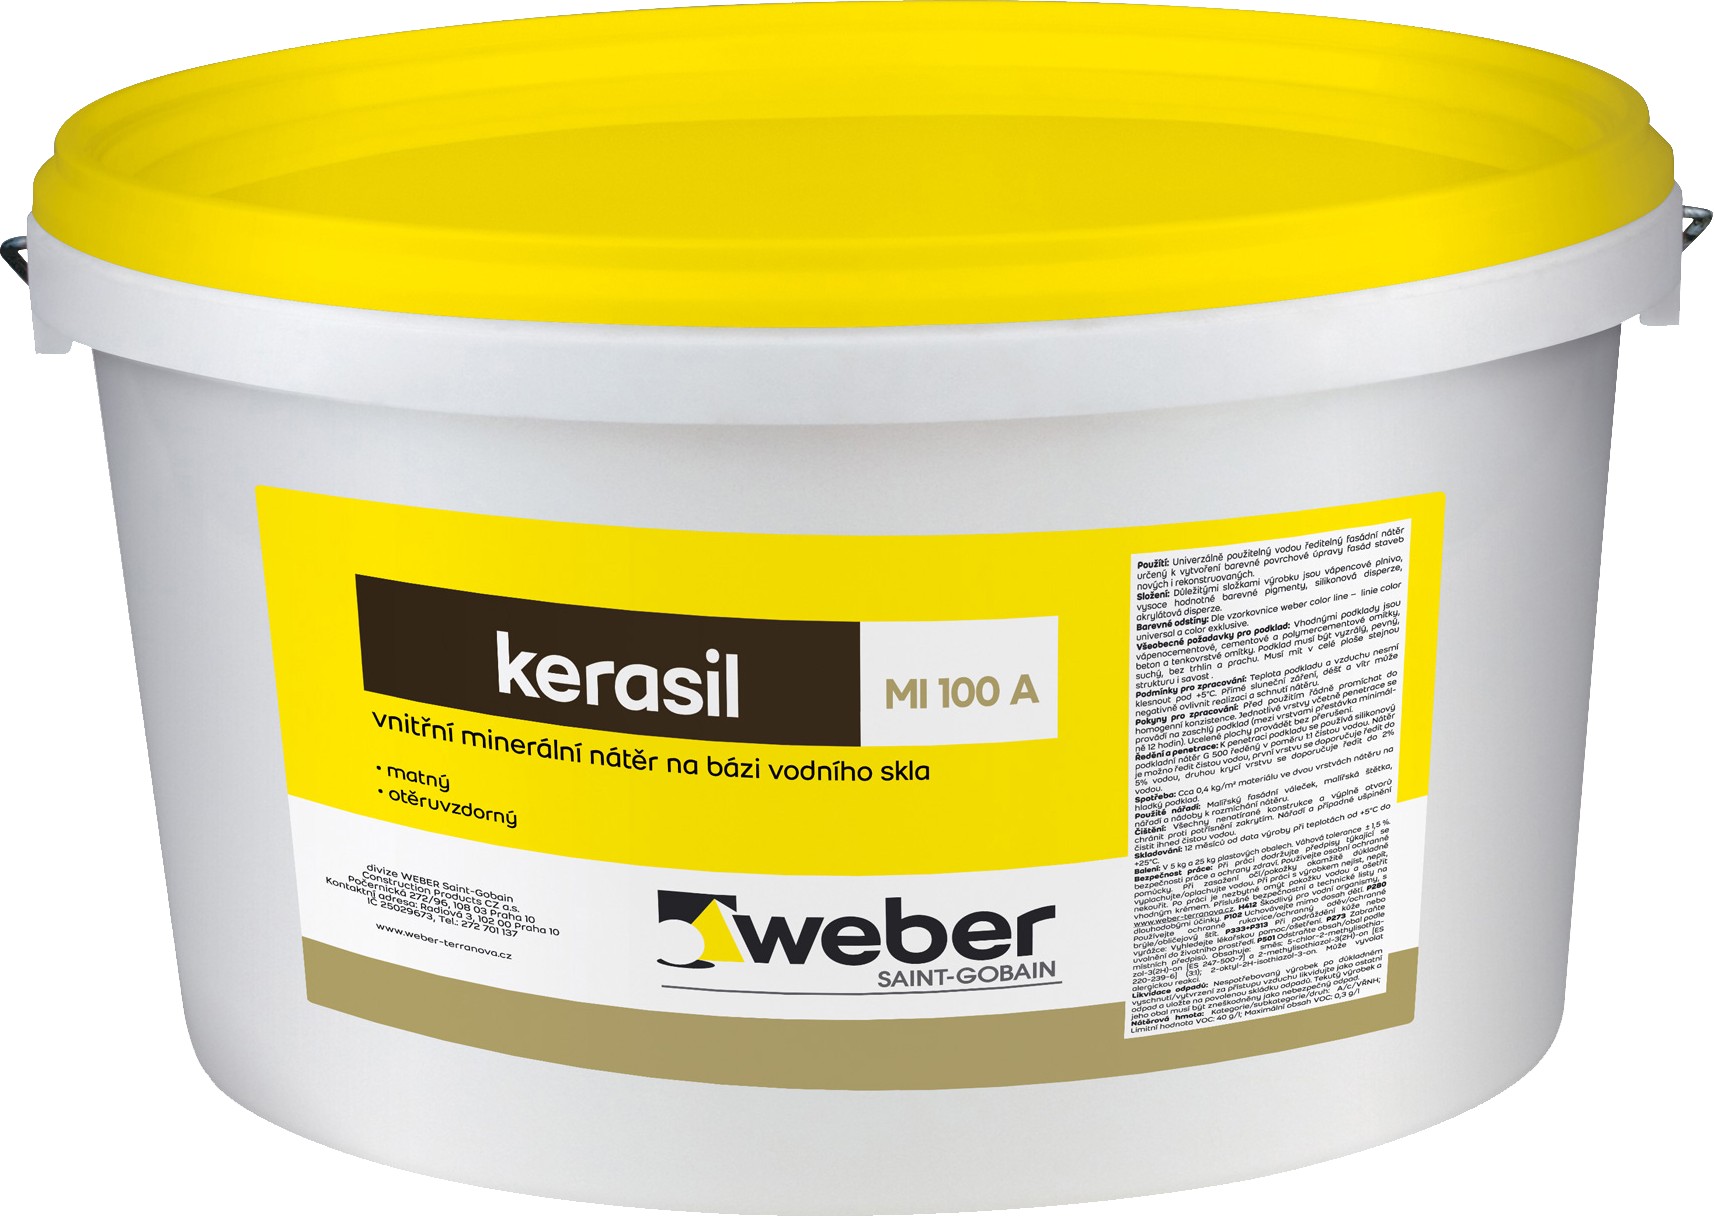 Nátěr vnitřní minerální Weber Kerasil 15 kg